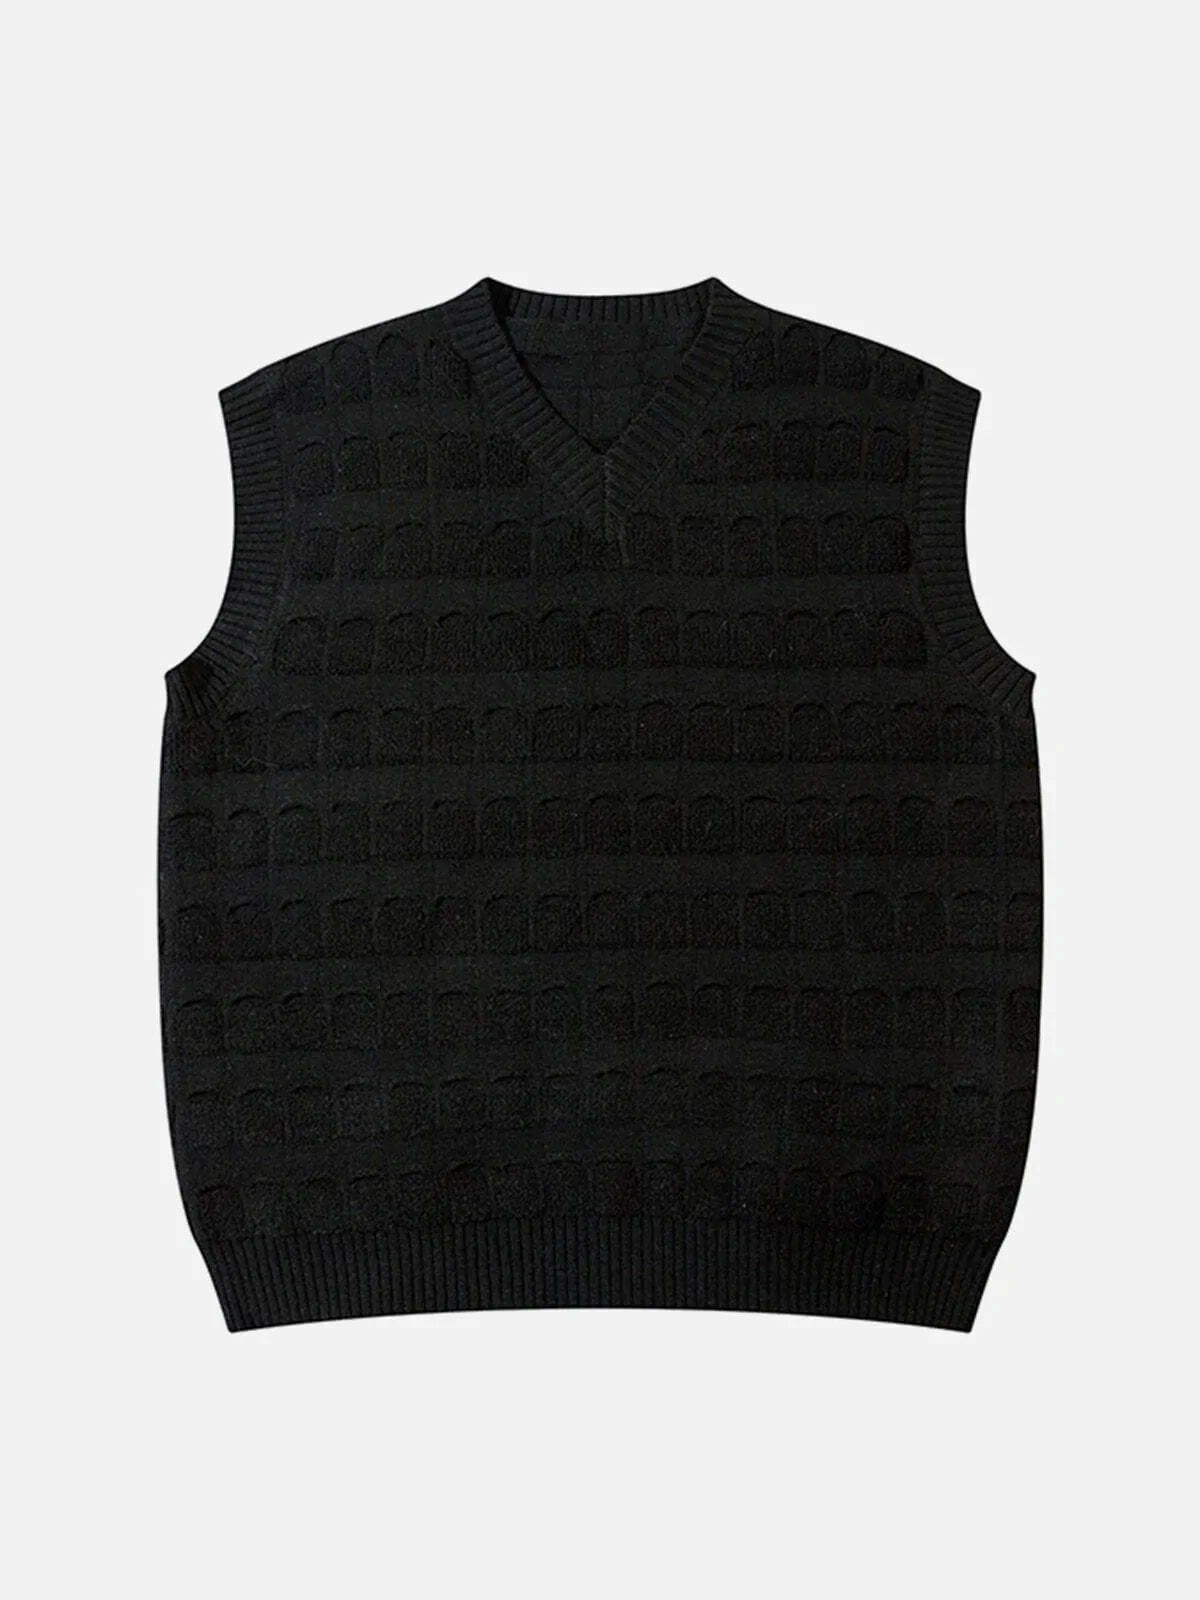 stripe sweater vest retro streetwear essential 5860